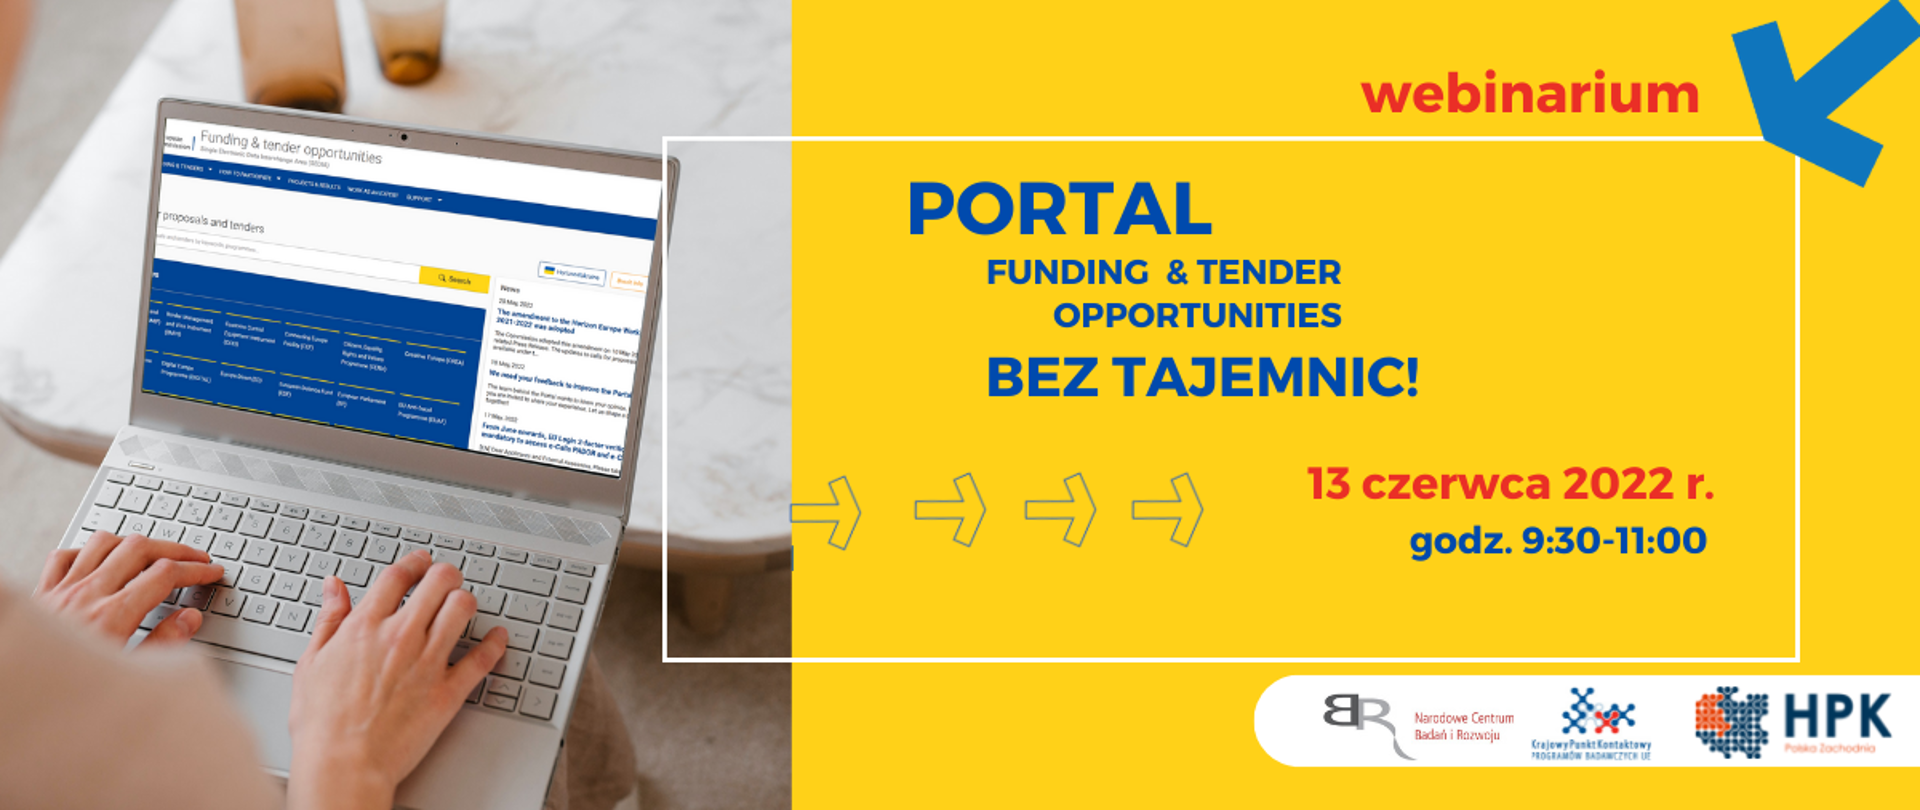 webinarium
Portal fundung & tender opportunities
Bez tajemnic!
13 czerwca 2022 r.
godz. 9:30 - 11:00